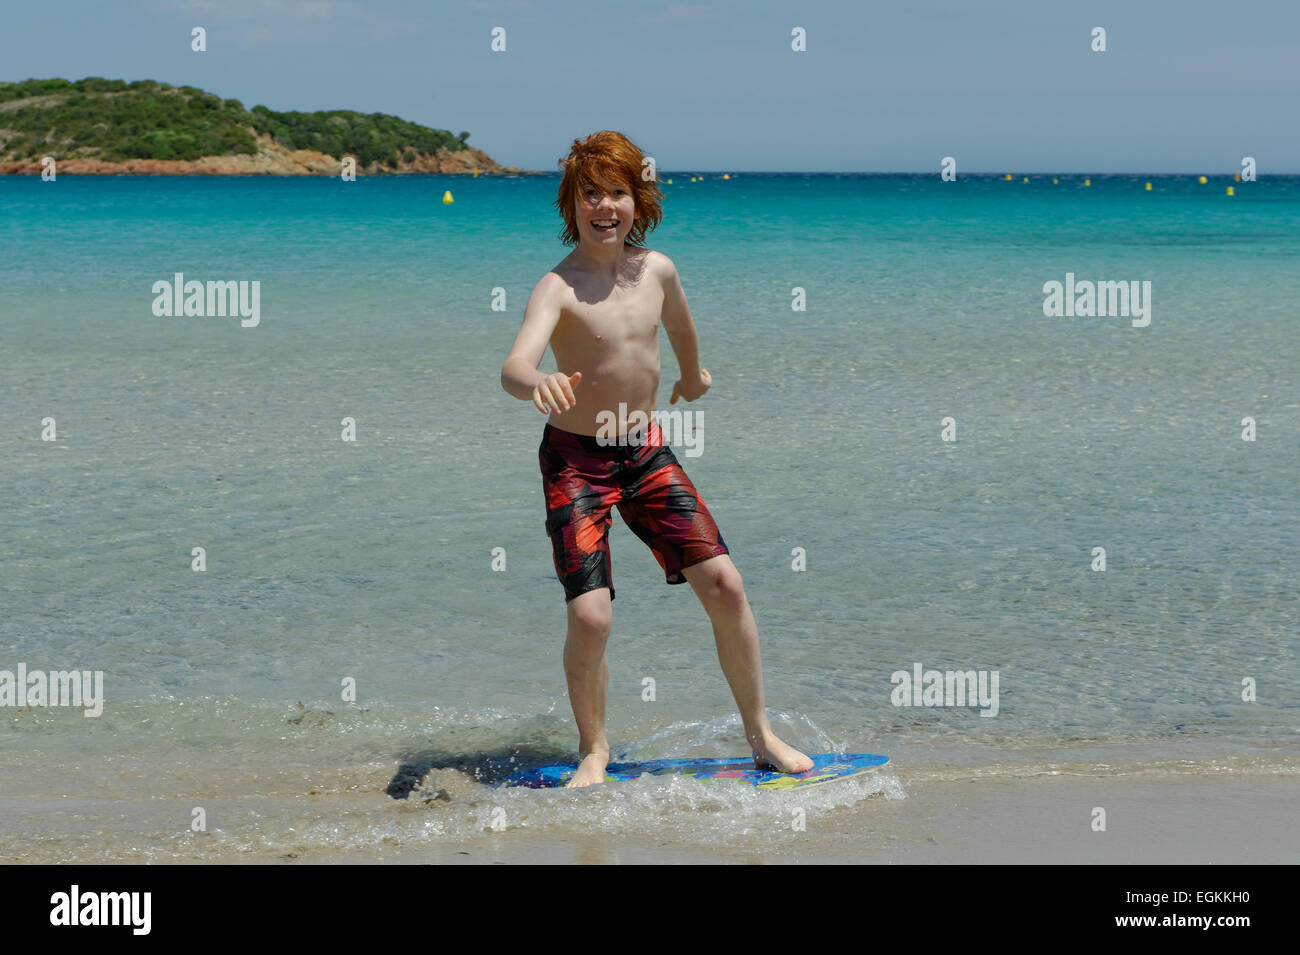 Junge mit seinem Surfbrett, Strand Board oder Skimboarden Surfen, am Strand, Bucht von Rondinara, Südostküste, Korsika, Frankreich Stockfoto